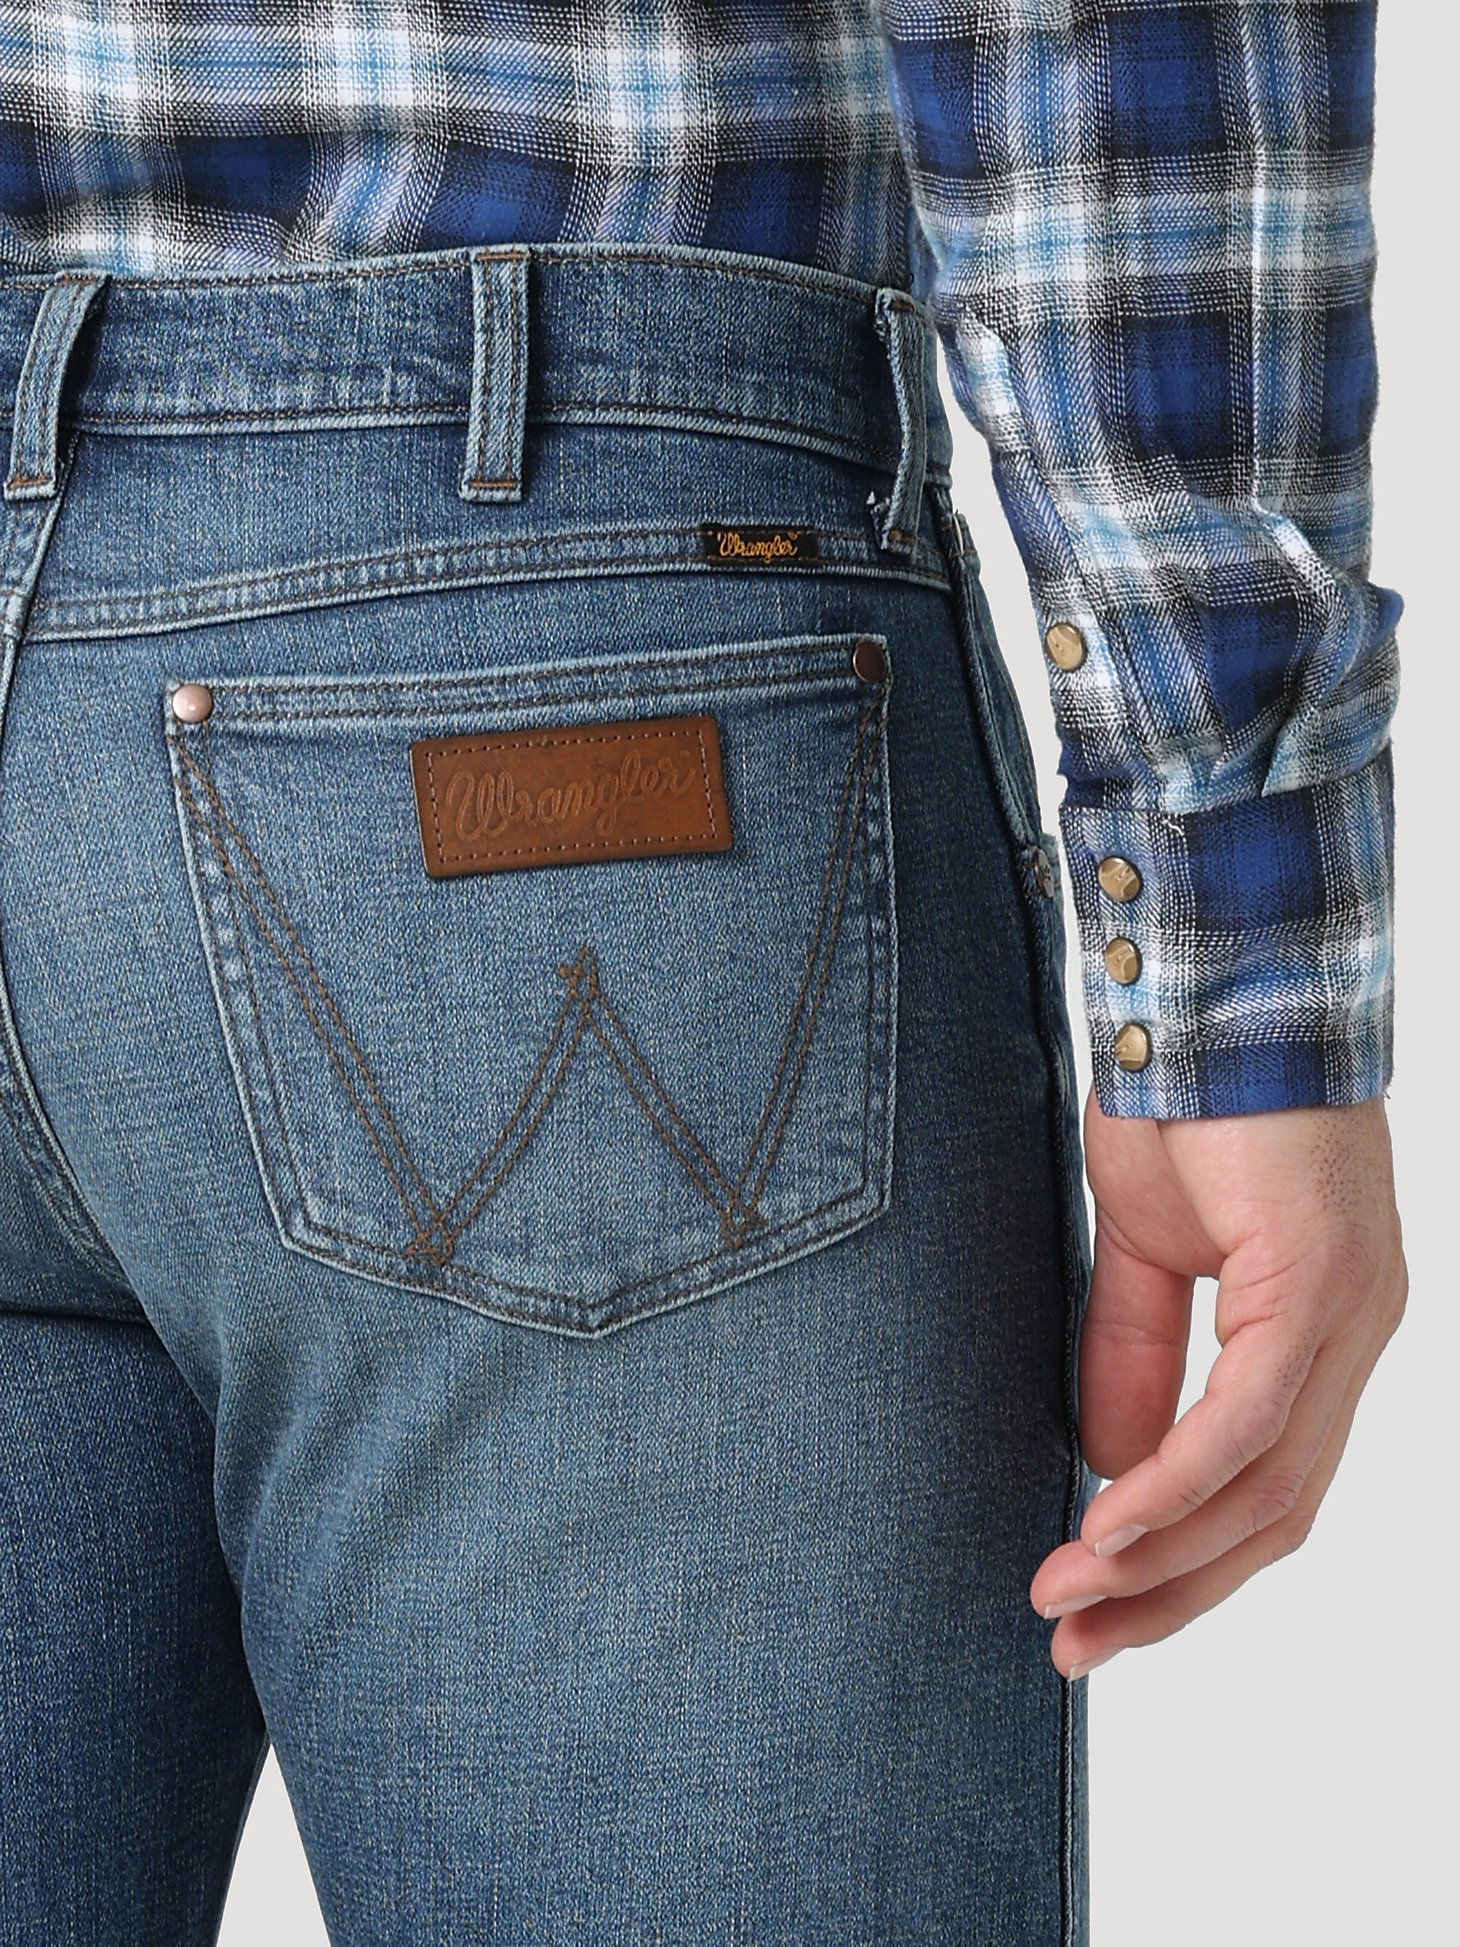 The Wrangler Retro® Premium Jean: Men's Slim Straight in Ansley alternative view 3